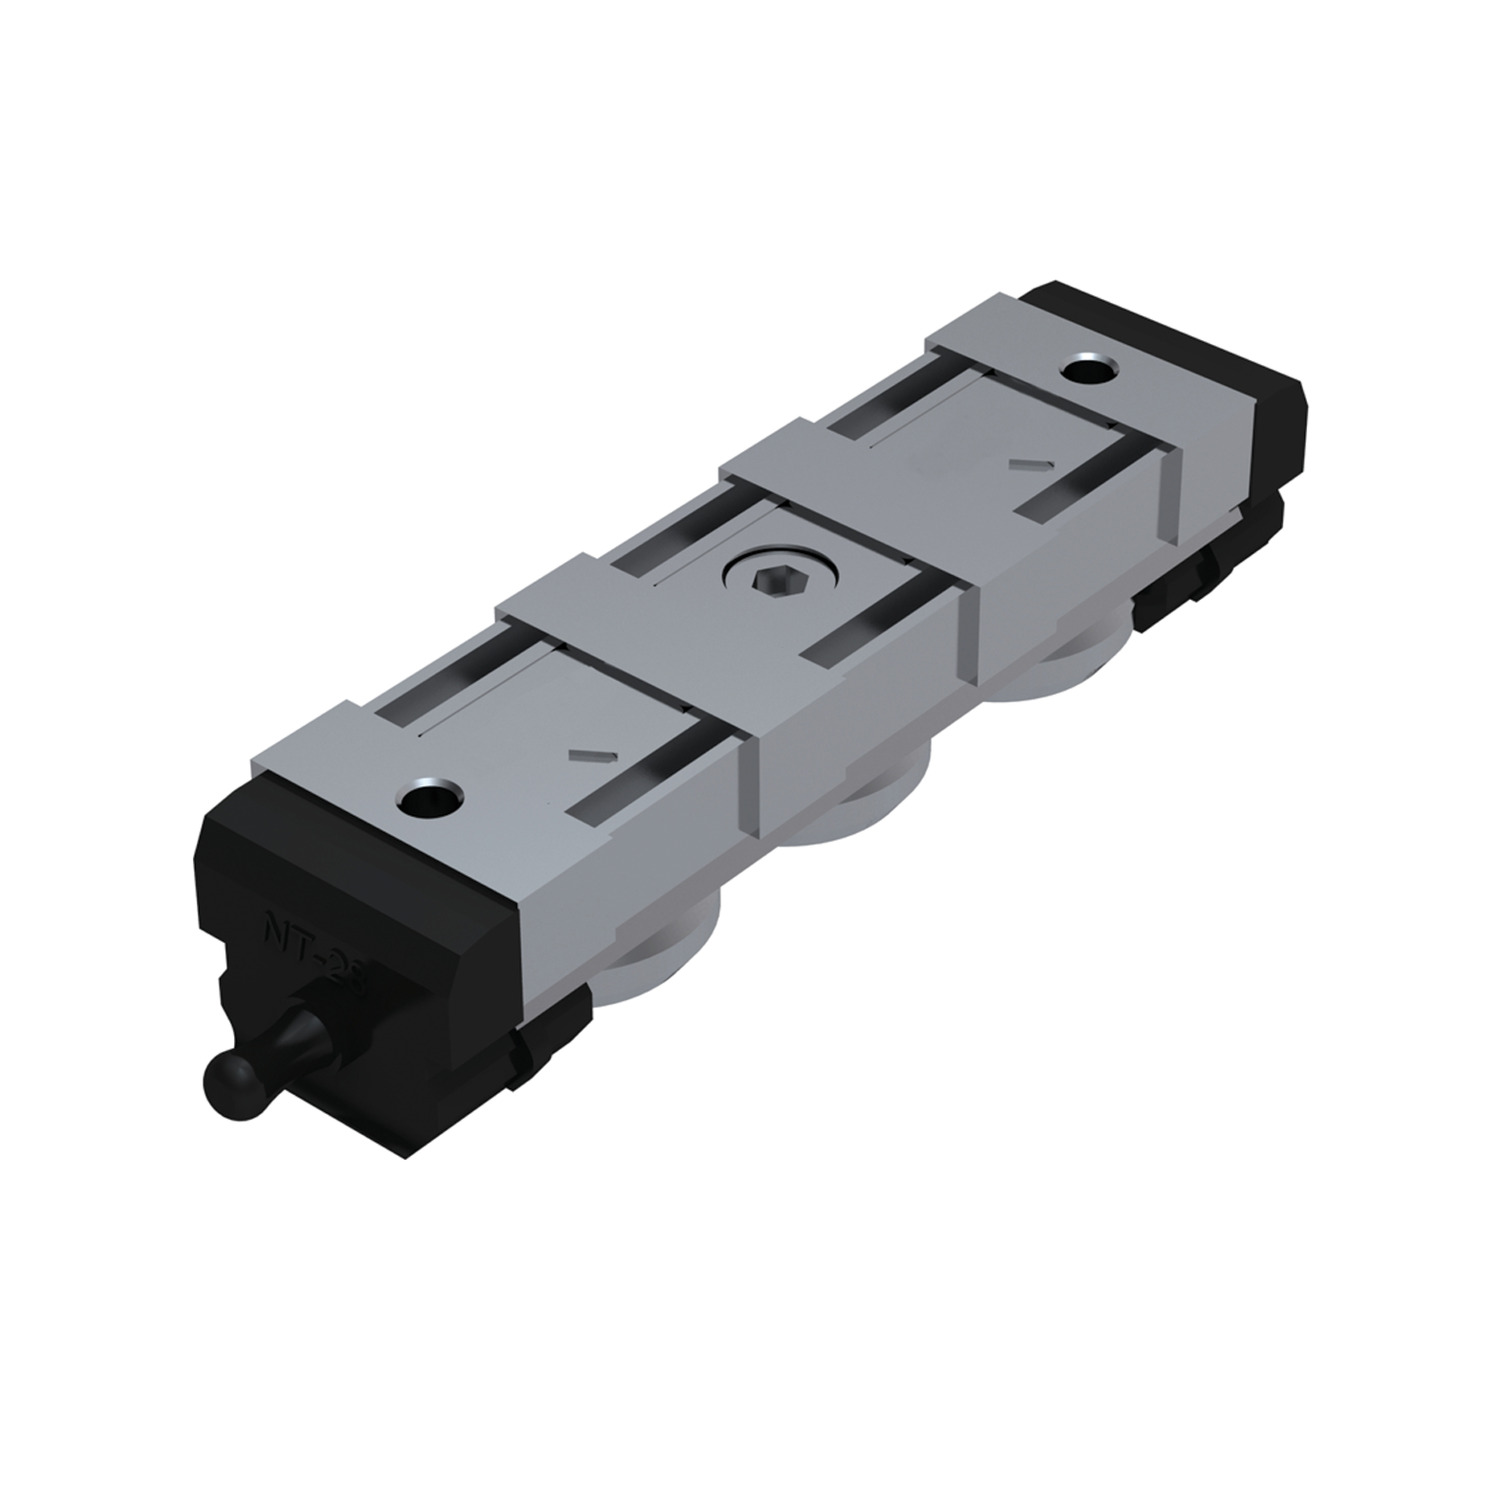 Product L1943.N, Heavy Duty Sliders, size 43 standard / 